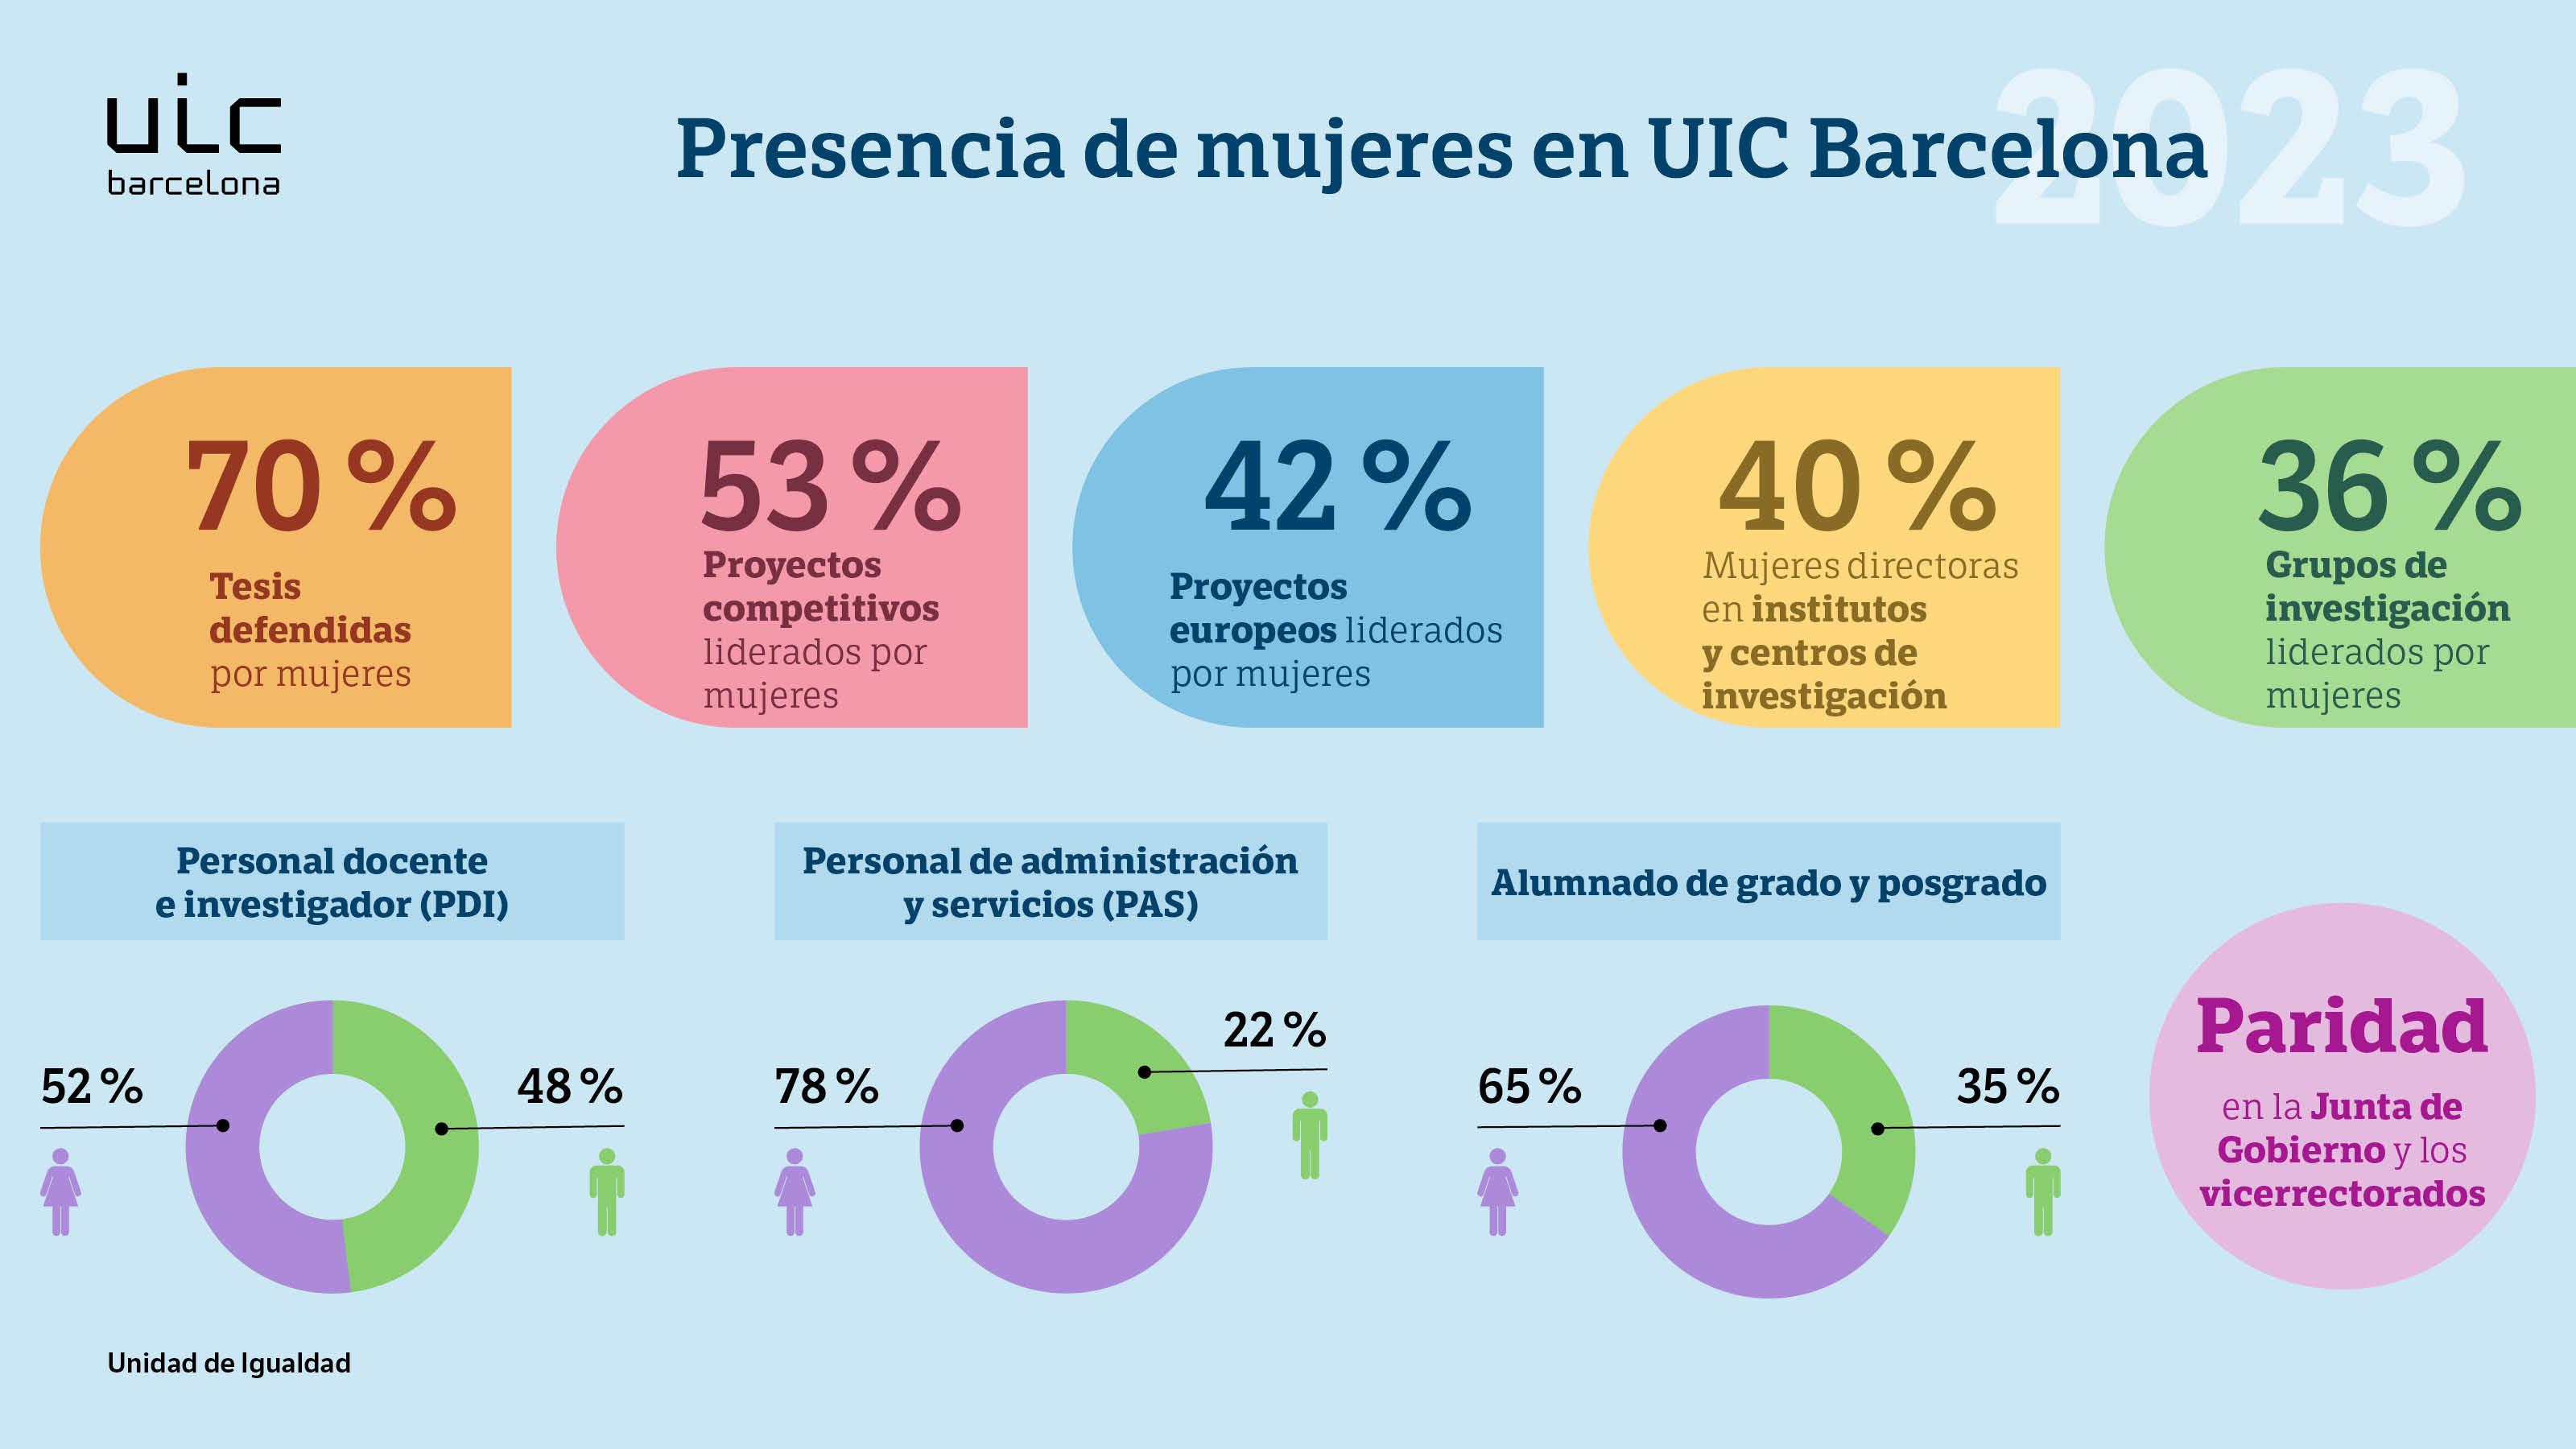 Presencia de mujeres en UIC Barcelona